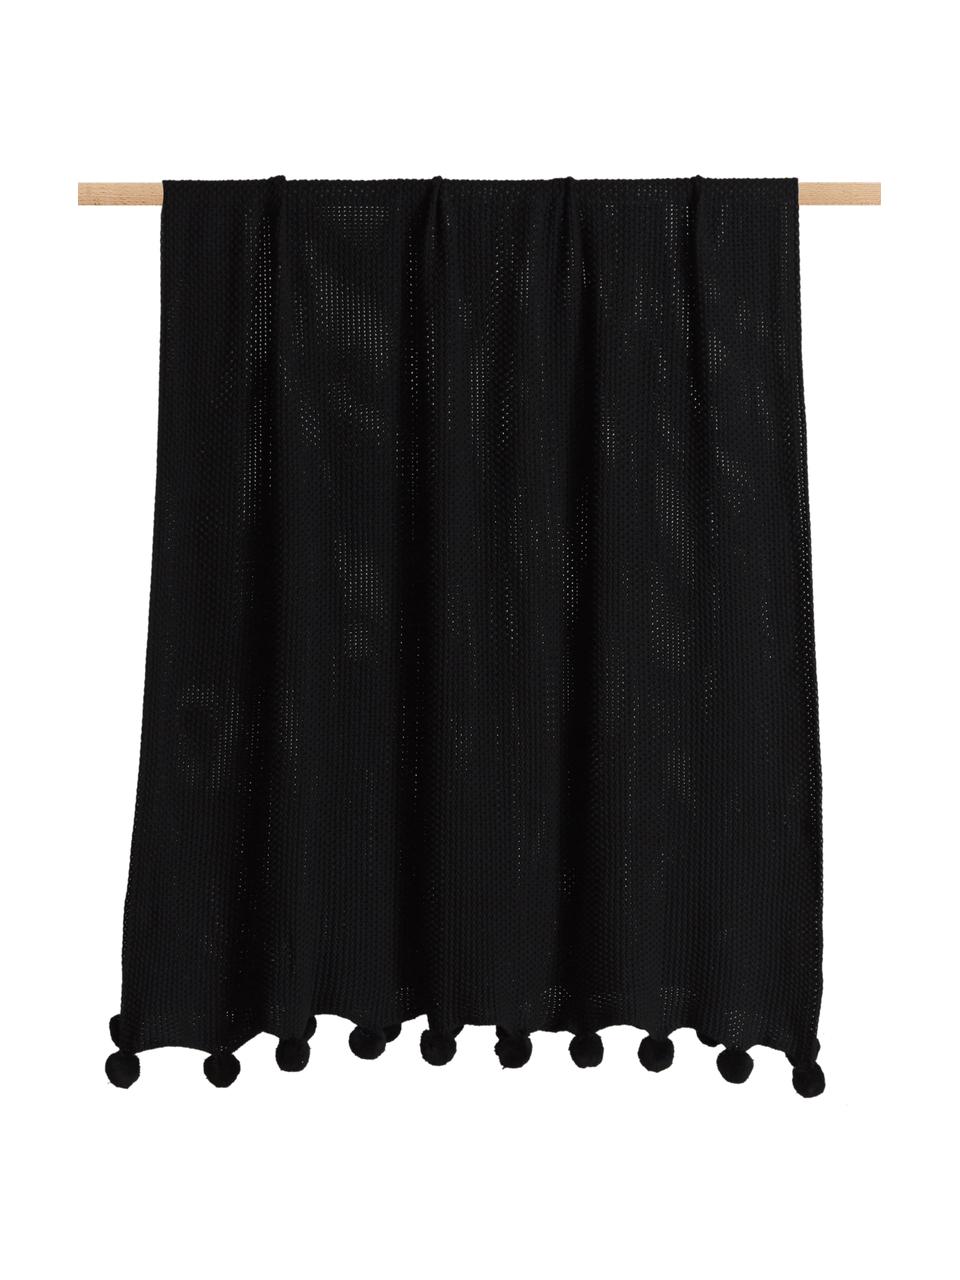 Coperta a maglia color nero con pompon Molly, 100% cotone, Nero, Larg. 130 x Lung. 170 cm